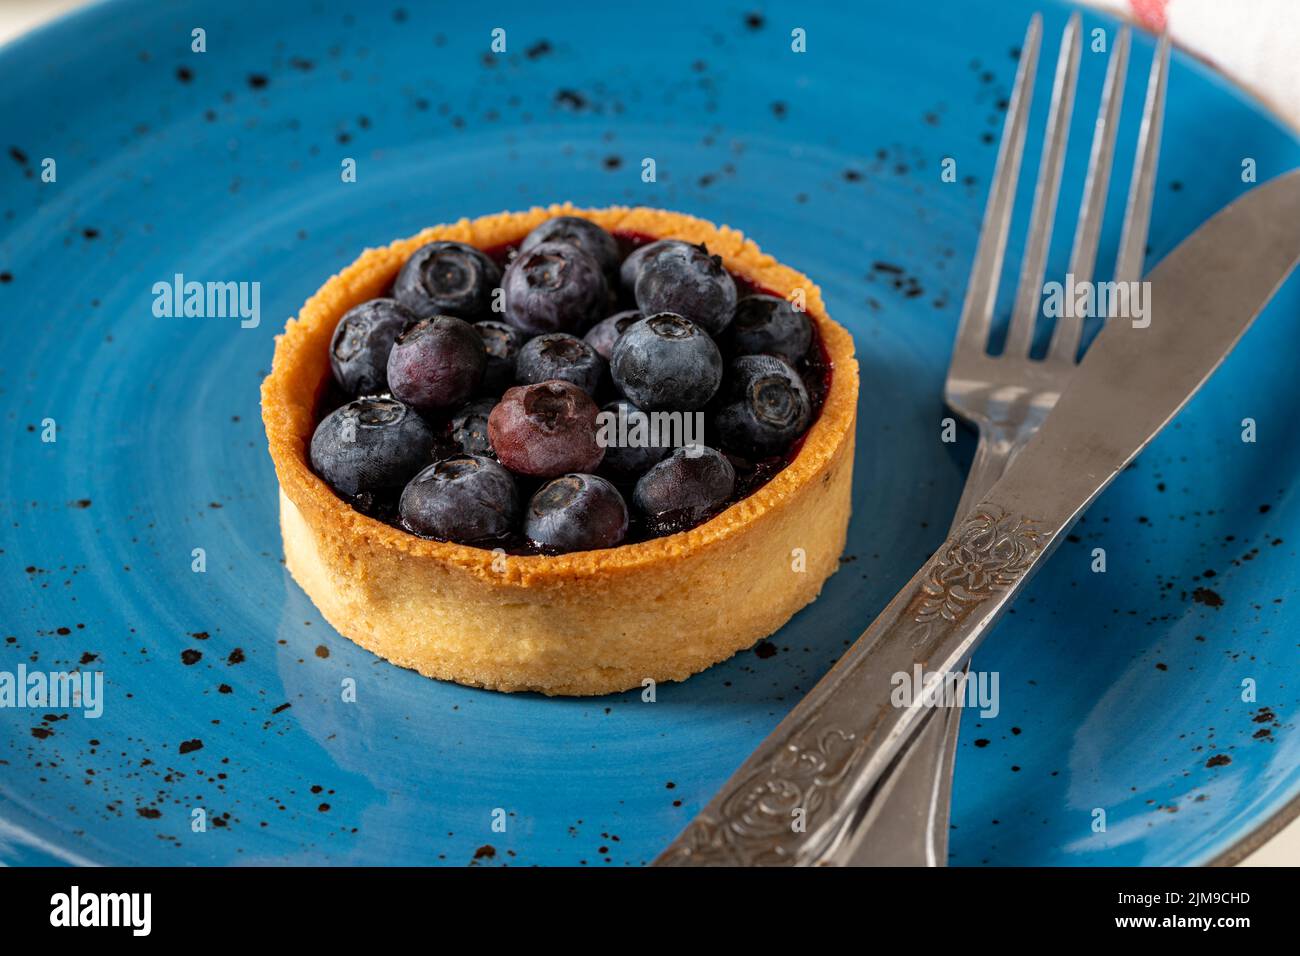 Freshly baked blueberry tart on a blue porcelain plate Stock Photo